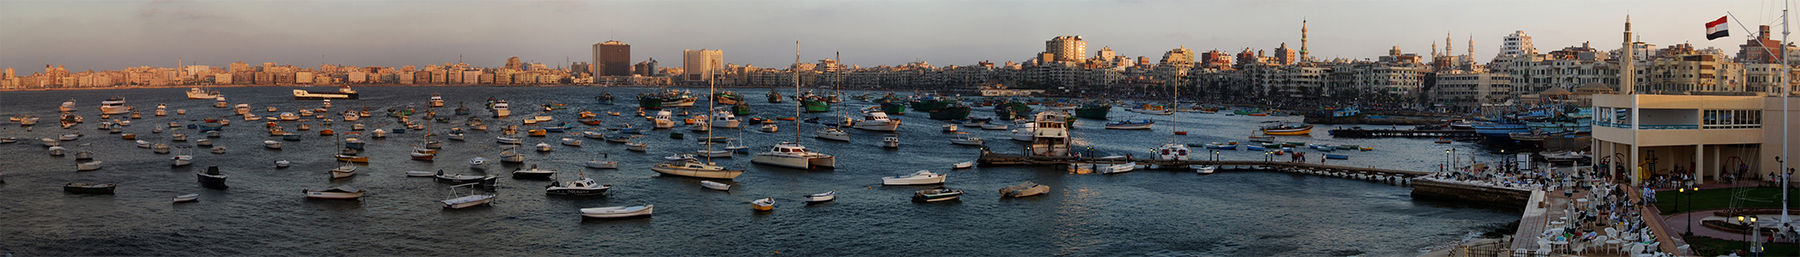 Hafen von Alexandria banner.jpg